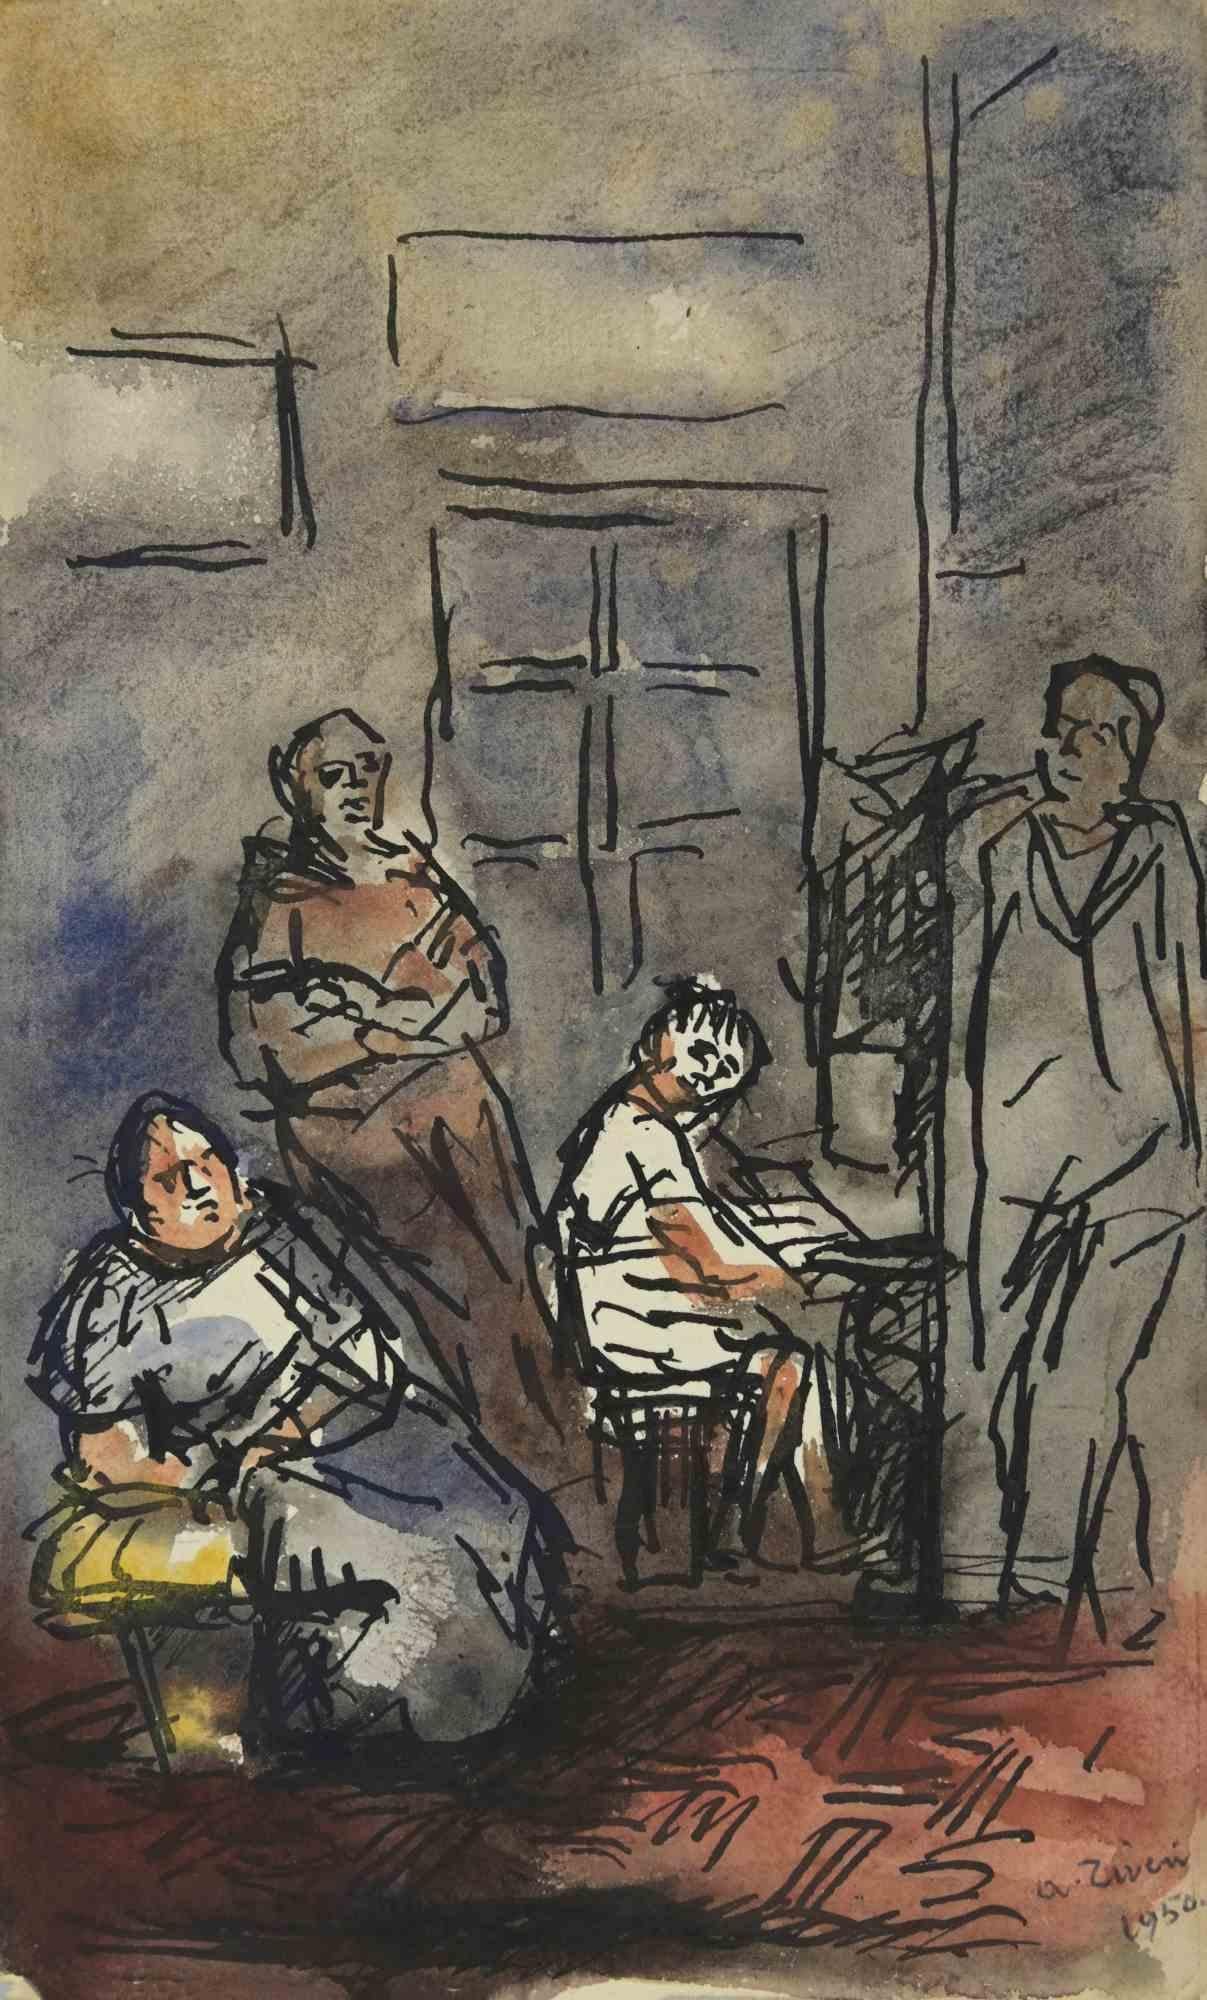 The Piano Listeners ist eine Zeichnung von Alberto Ziveri aus dem Jahr 1950

Tusche und Aquarell auf Papier.

Handsigniert.

In gutem Zustand. 

Das Kunstwerk wird durch geschickte Striche meisterhaft dargestellt.

Alberto Ziveri (Rom, 1908 - 1990),